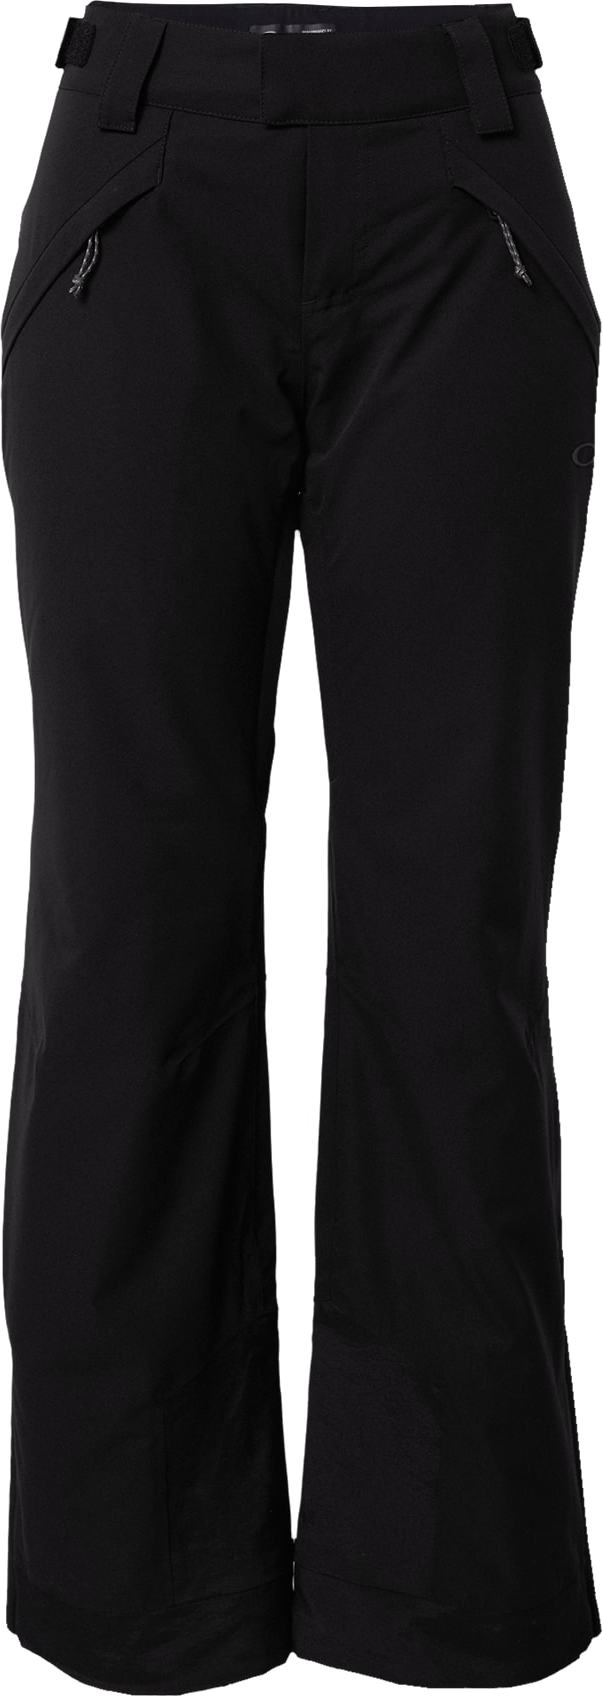 OAKLEY Outdoorové kalhoty 'IRIS' černá